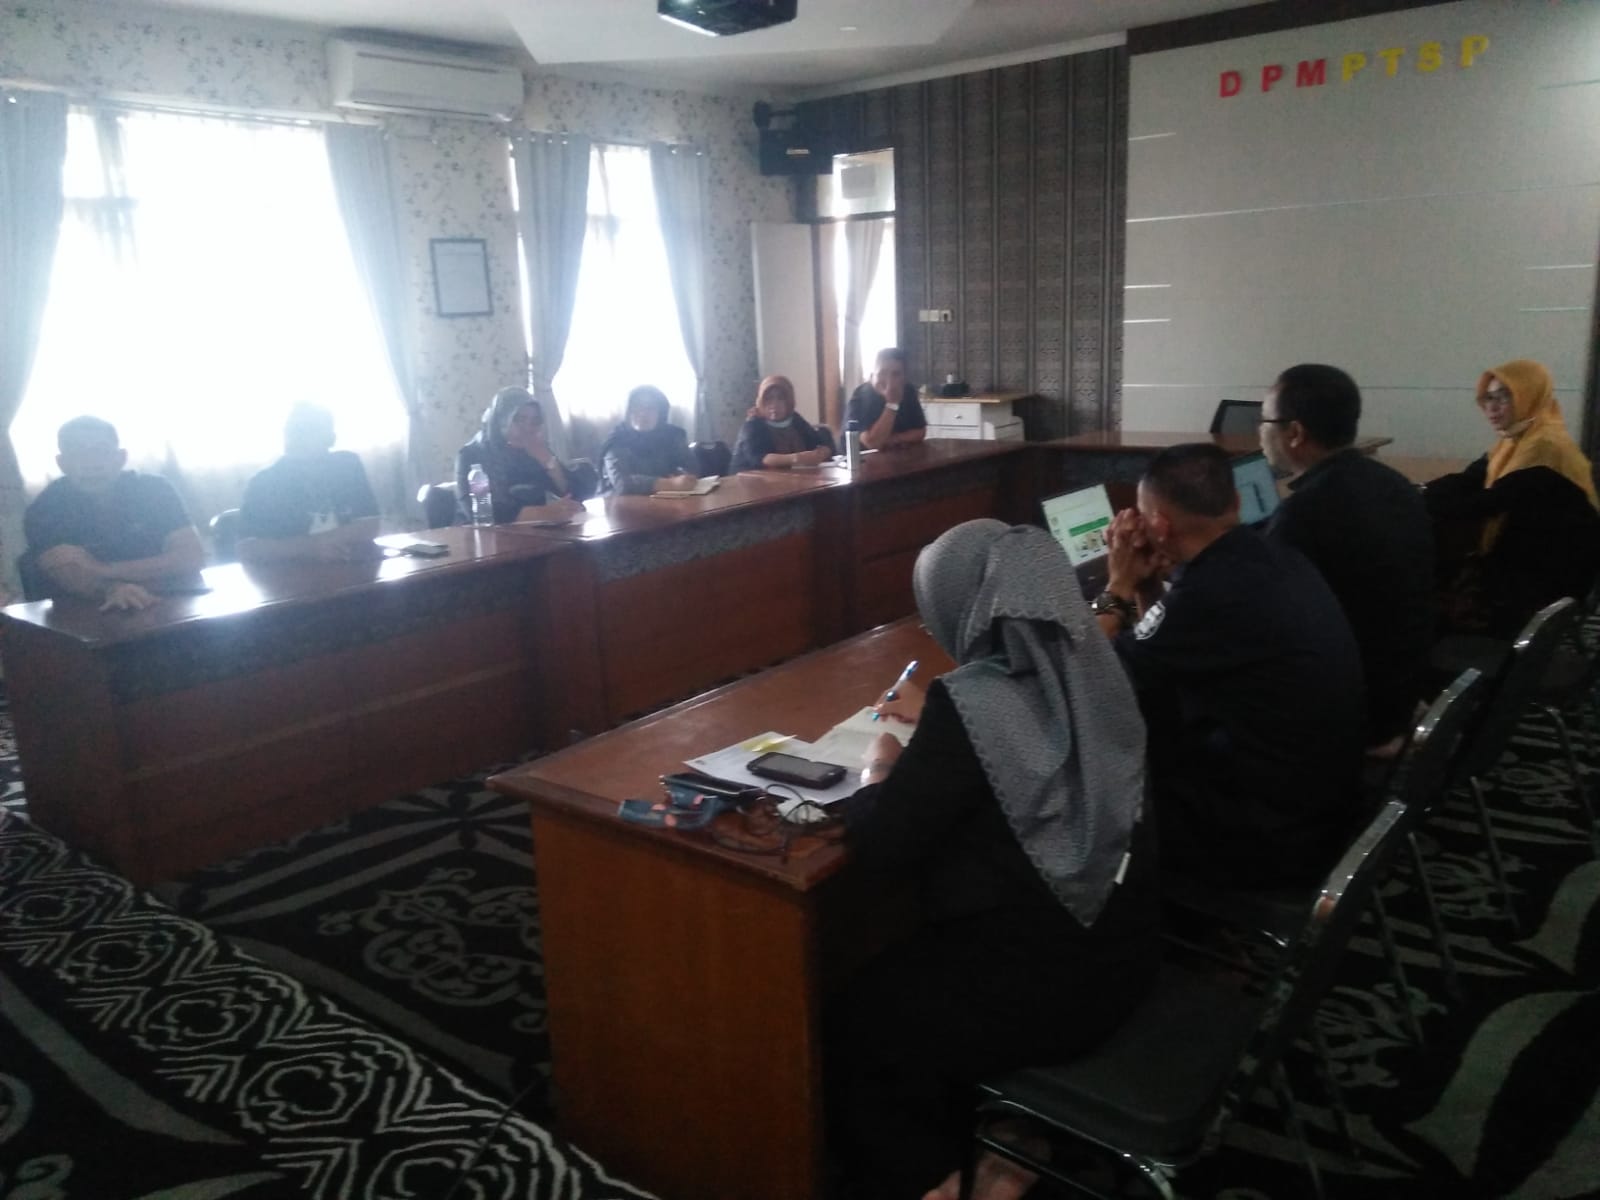 Rabu (22/06/2022) Rapat Koordinasi tentang Penyusunan Data Dukung SPIP bertempat di Aula DPMPTSP